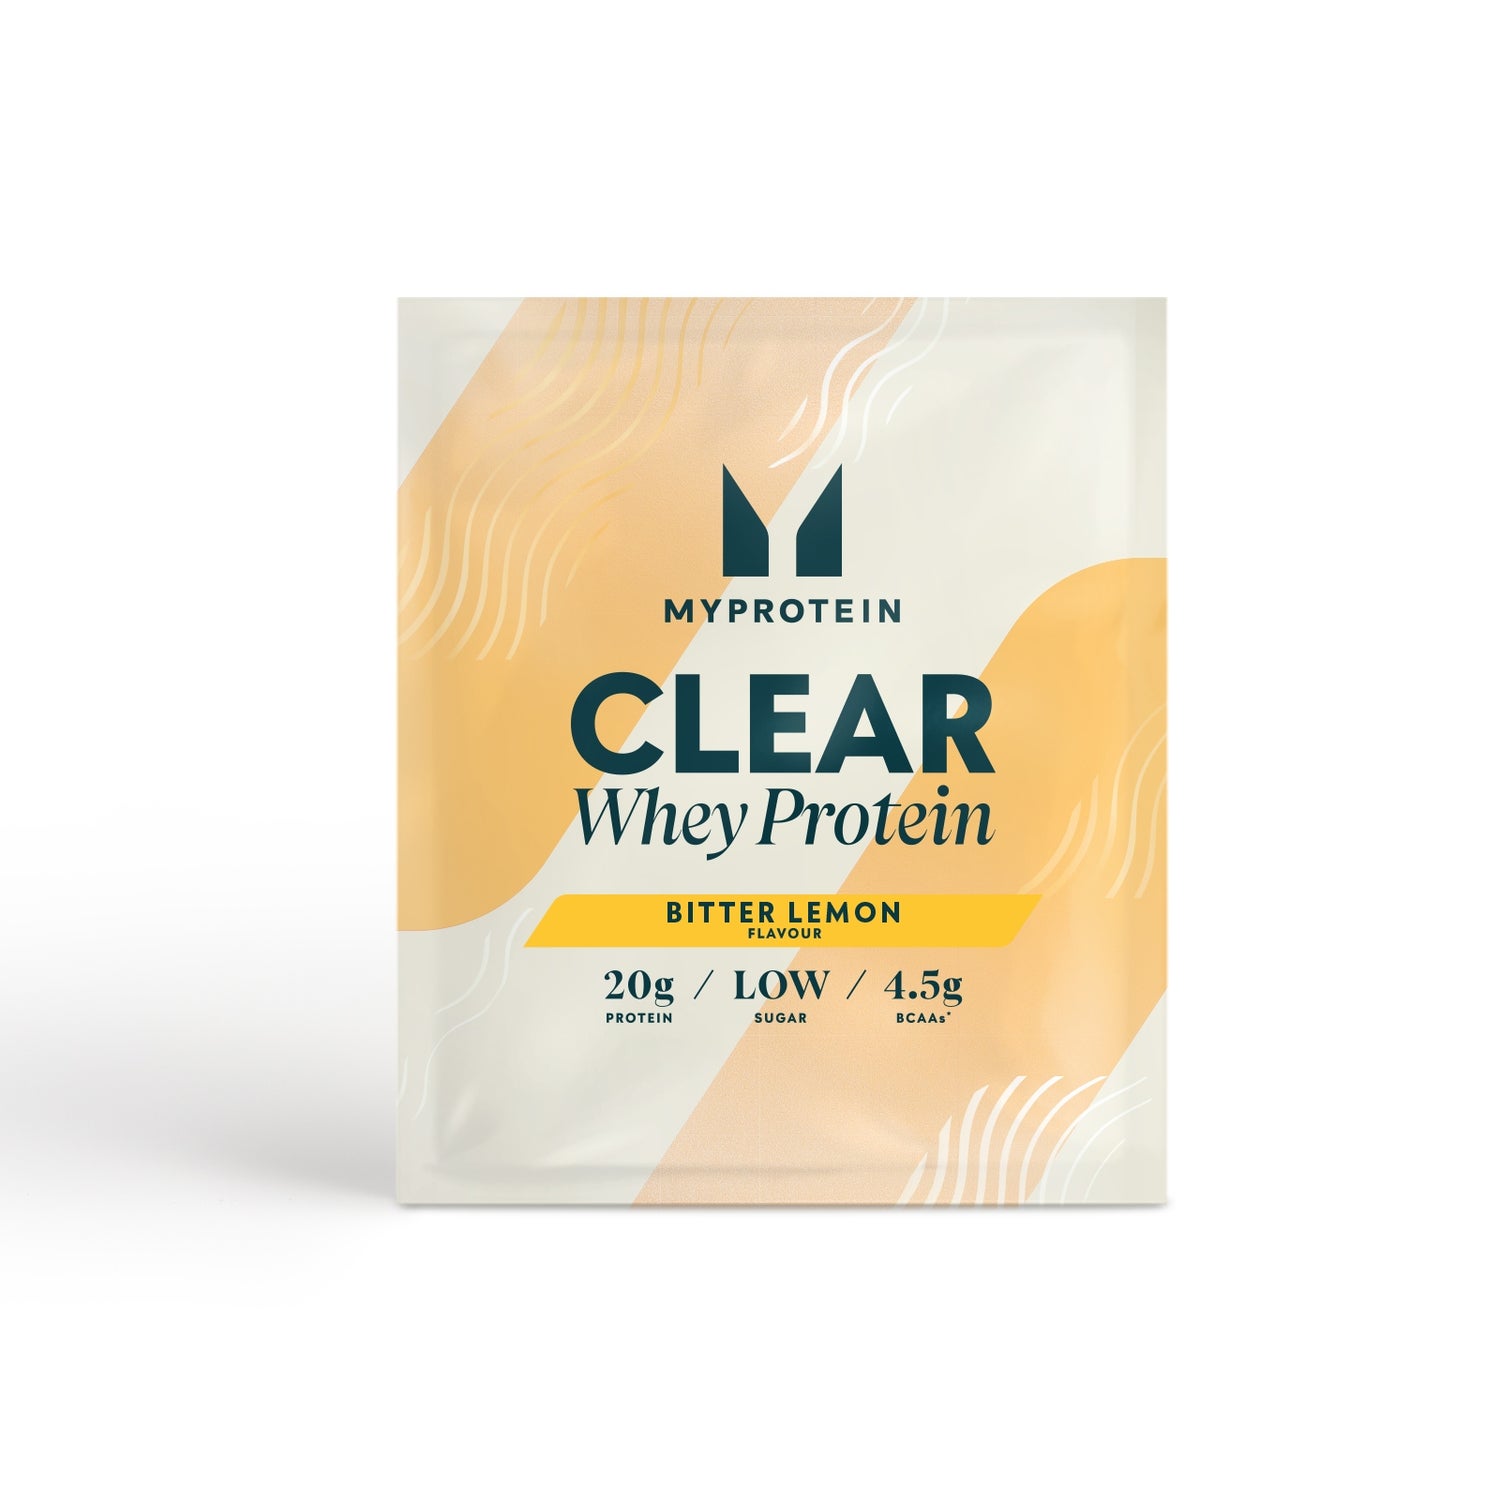 Clear Whey Isolate (Prøve) - 1servings - Bitter Lemon